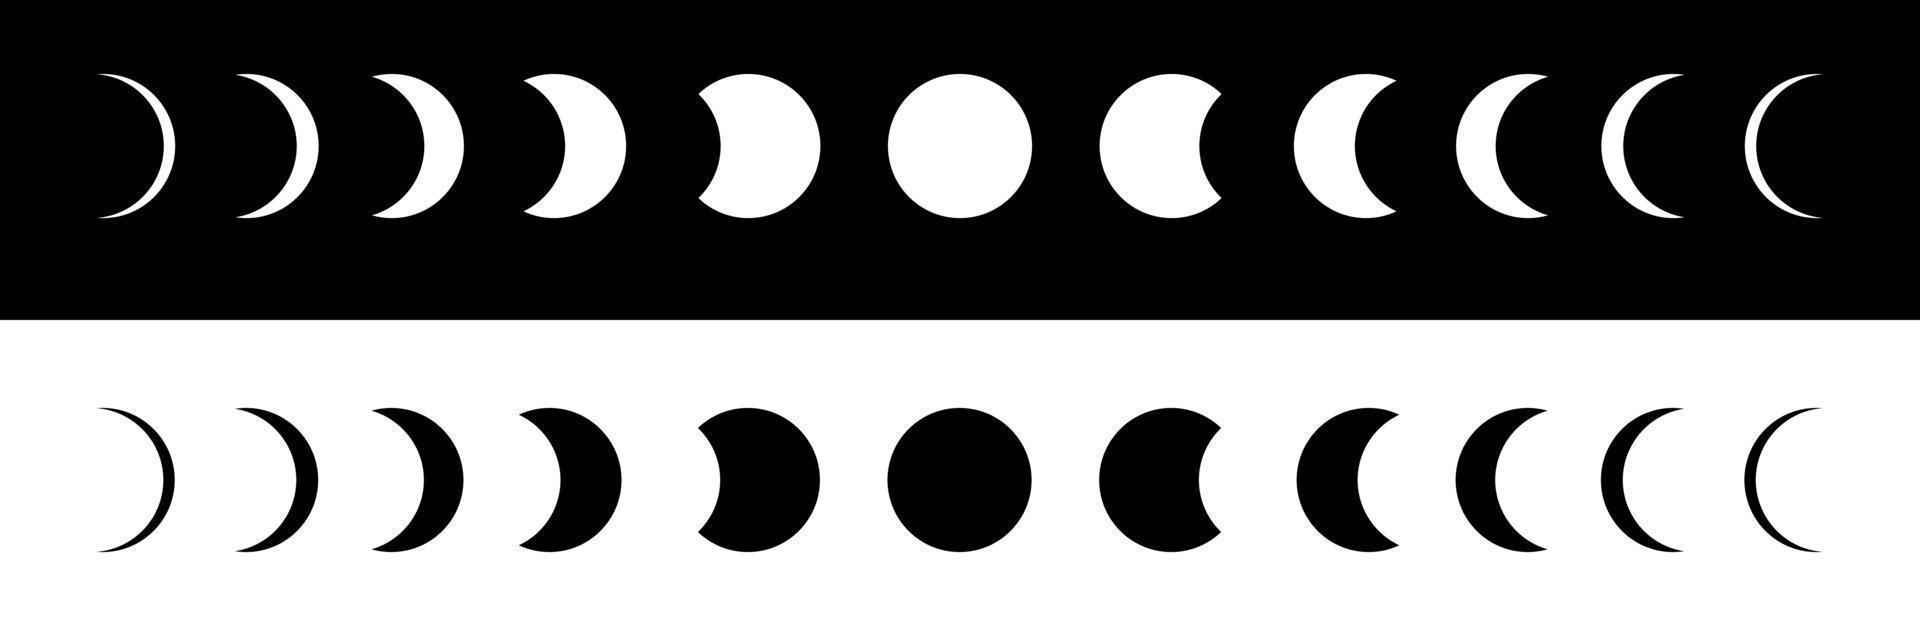 fases da lua em fundos preto e branco. calendário lunar. o movimento da lua em torno da terra. vetor